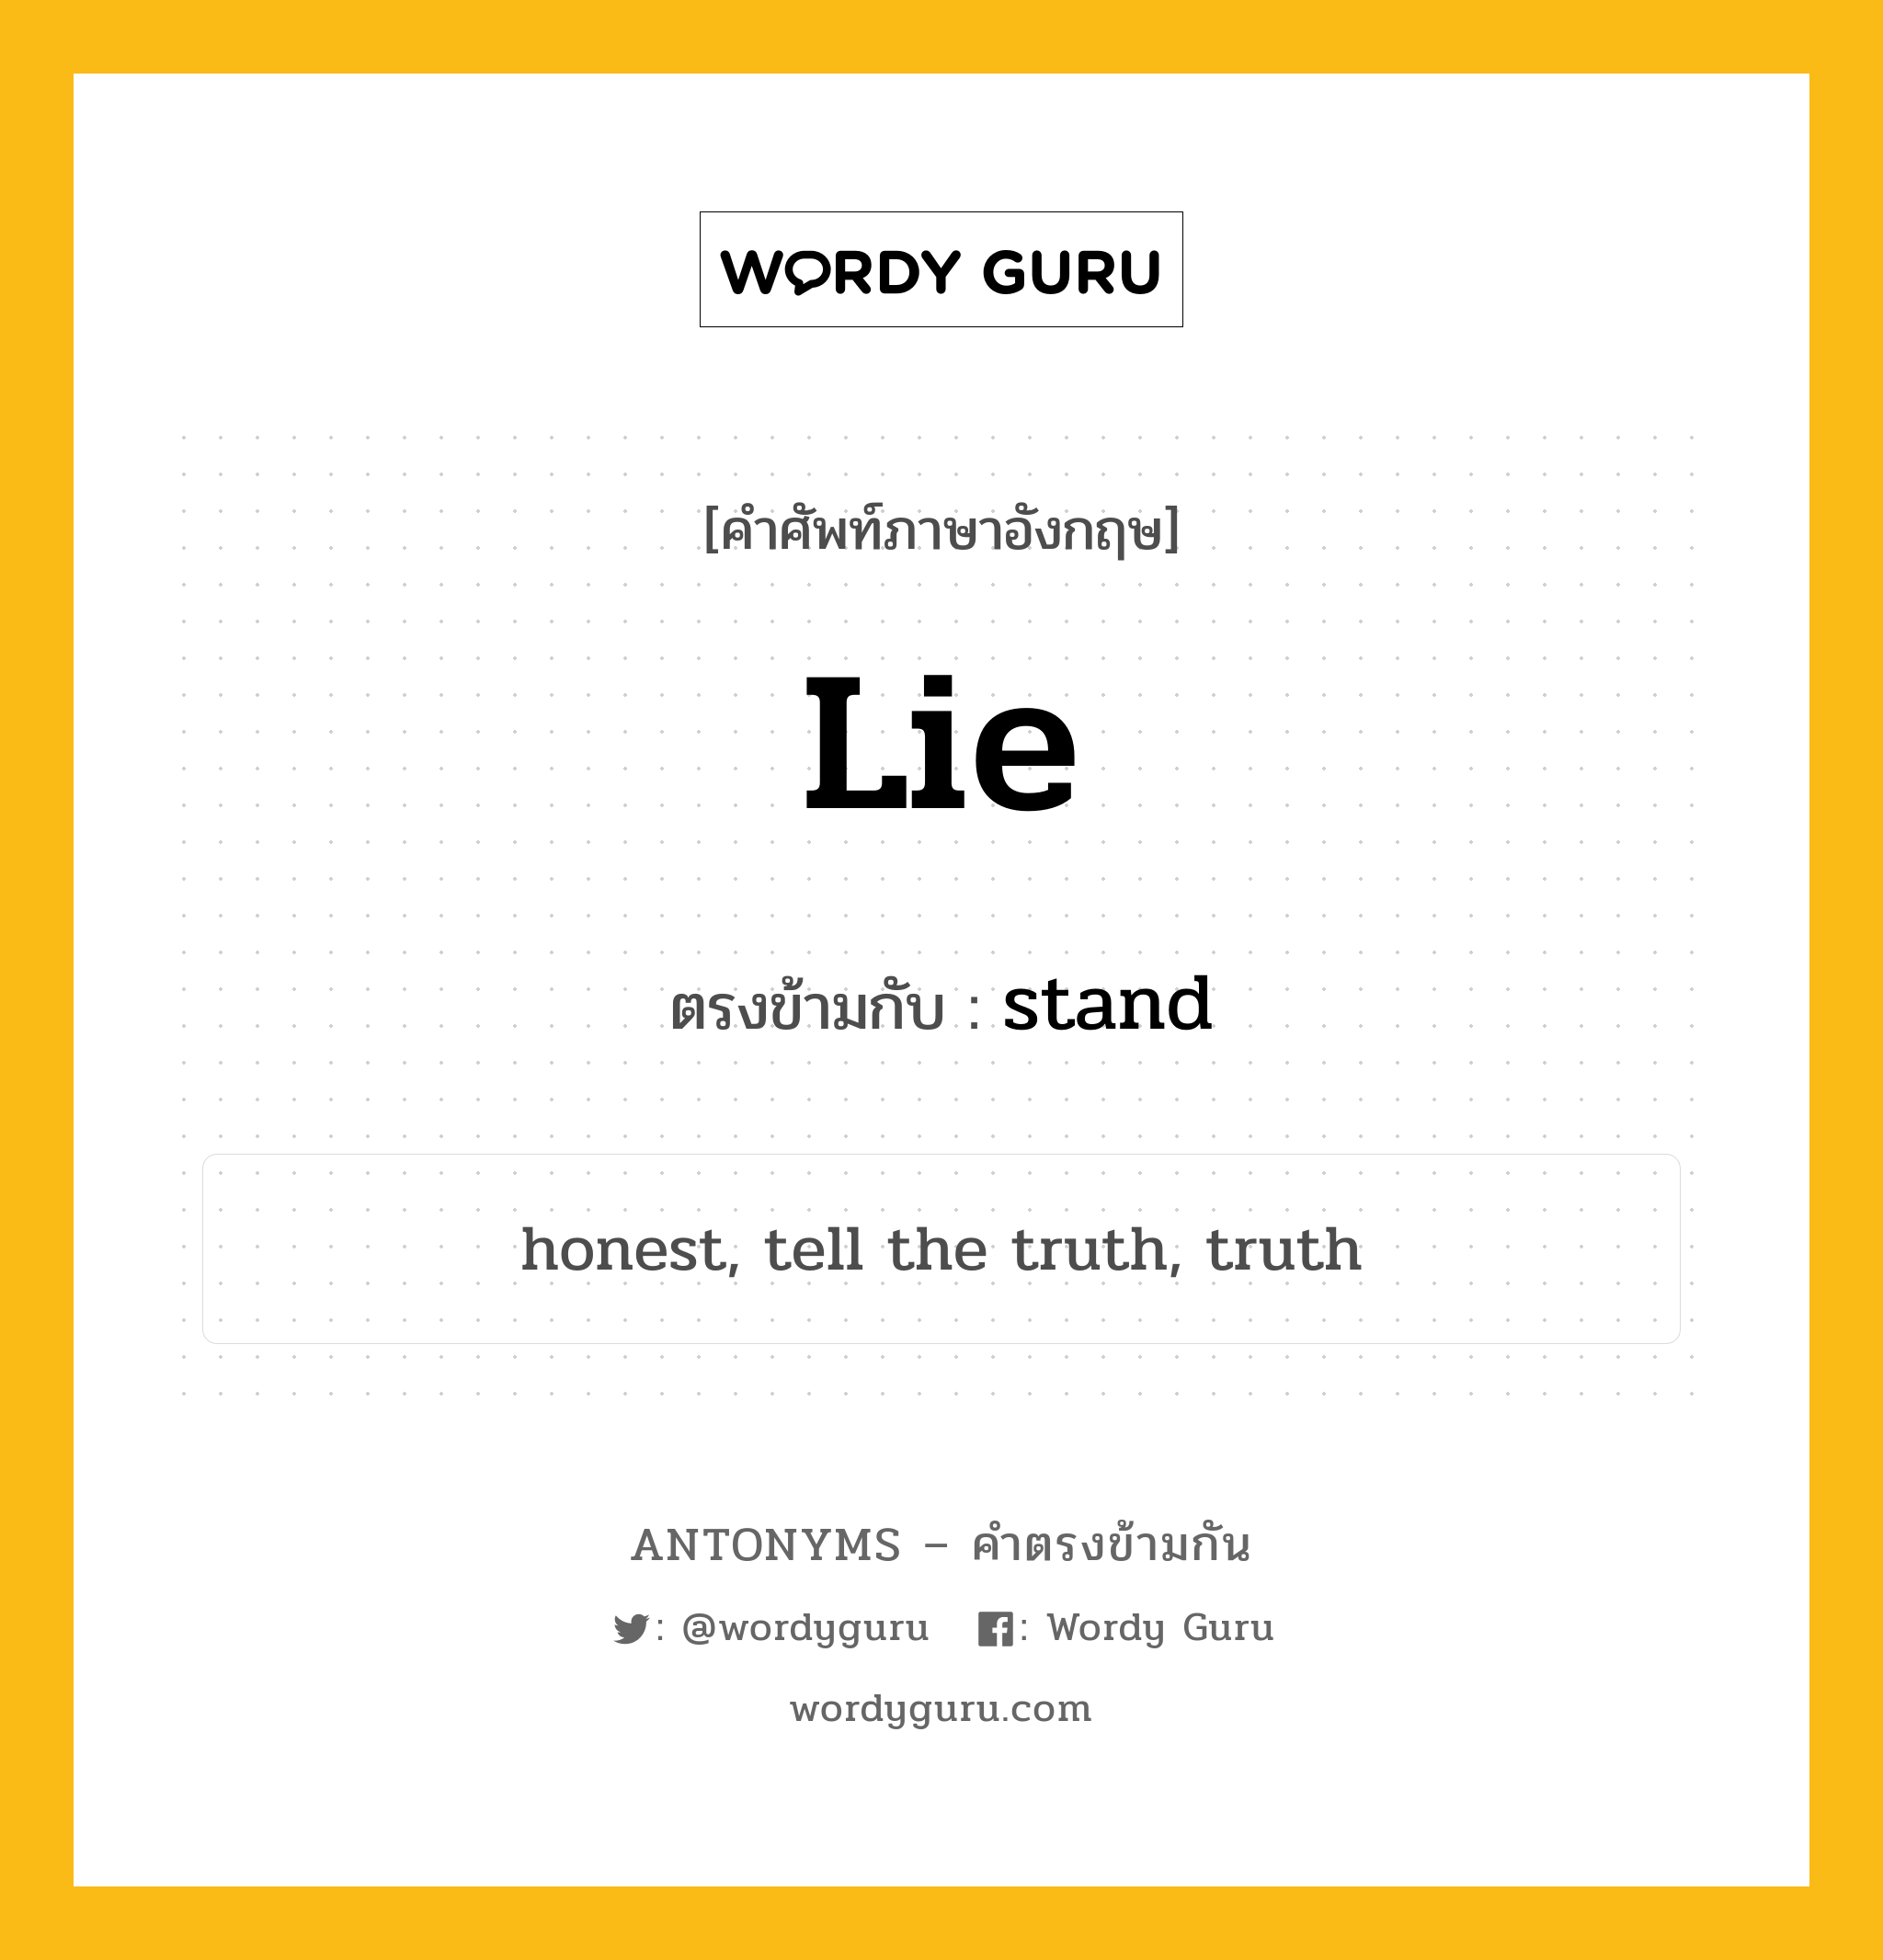 lie เป็นคำตรงข้ามกับคำไหนบ้าง?, คำศัพท์ภาษาอังกฤษ lie ตรงข้ามกับ stand หมวด stand